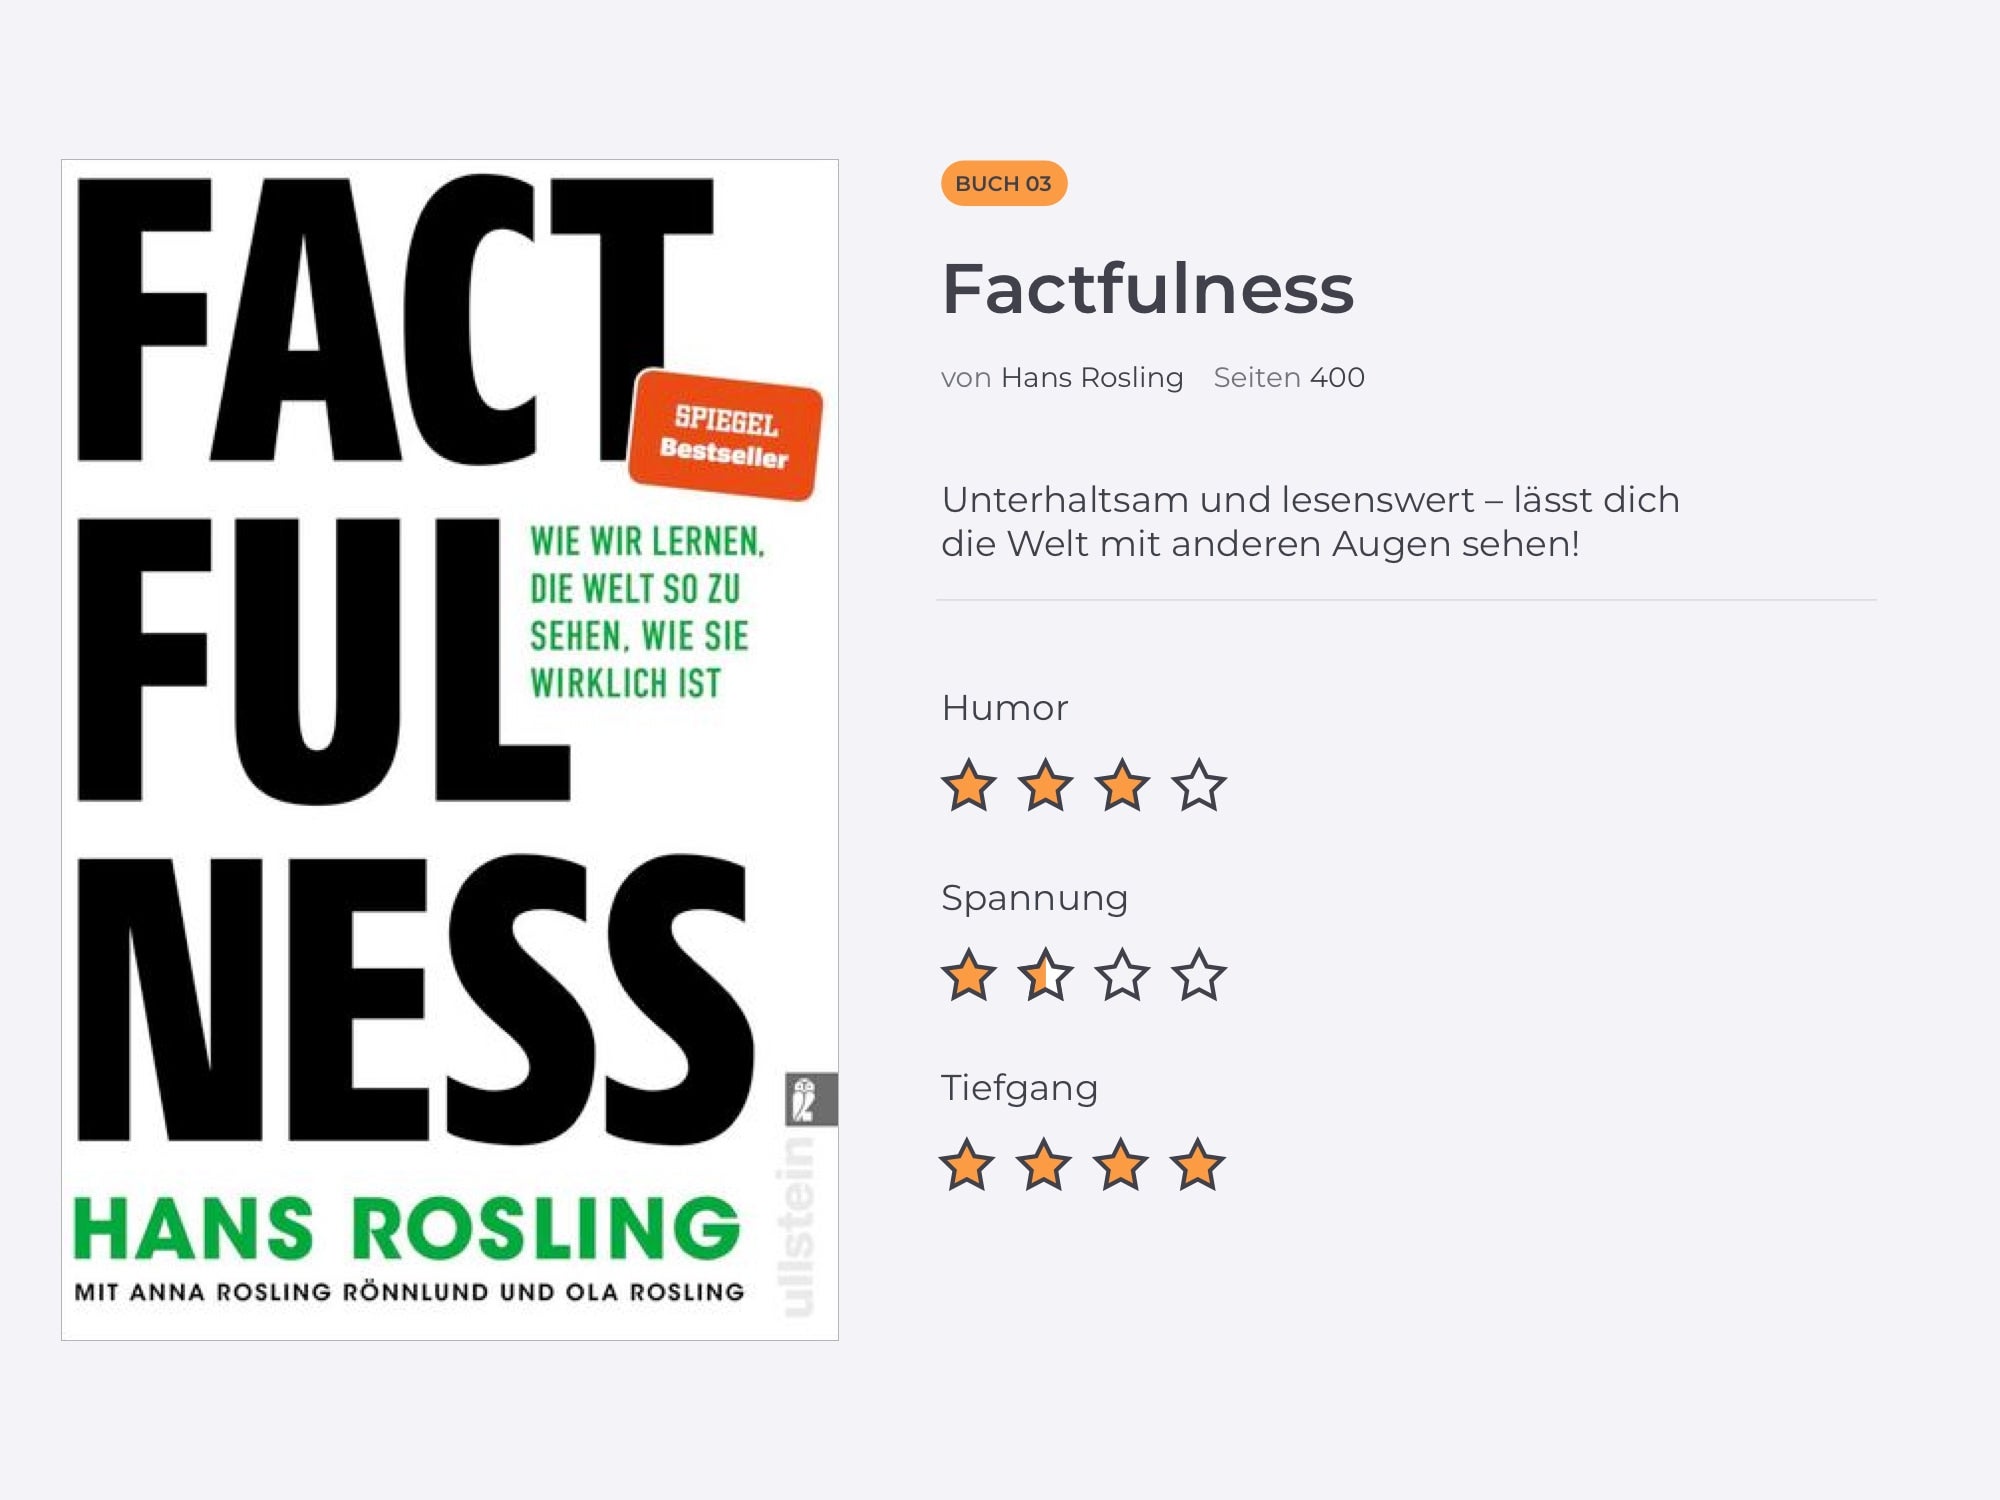 Titelbild des Buches von Hans Rosling.